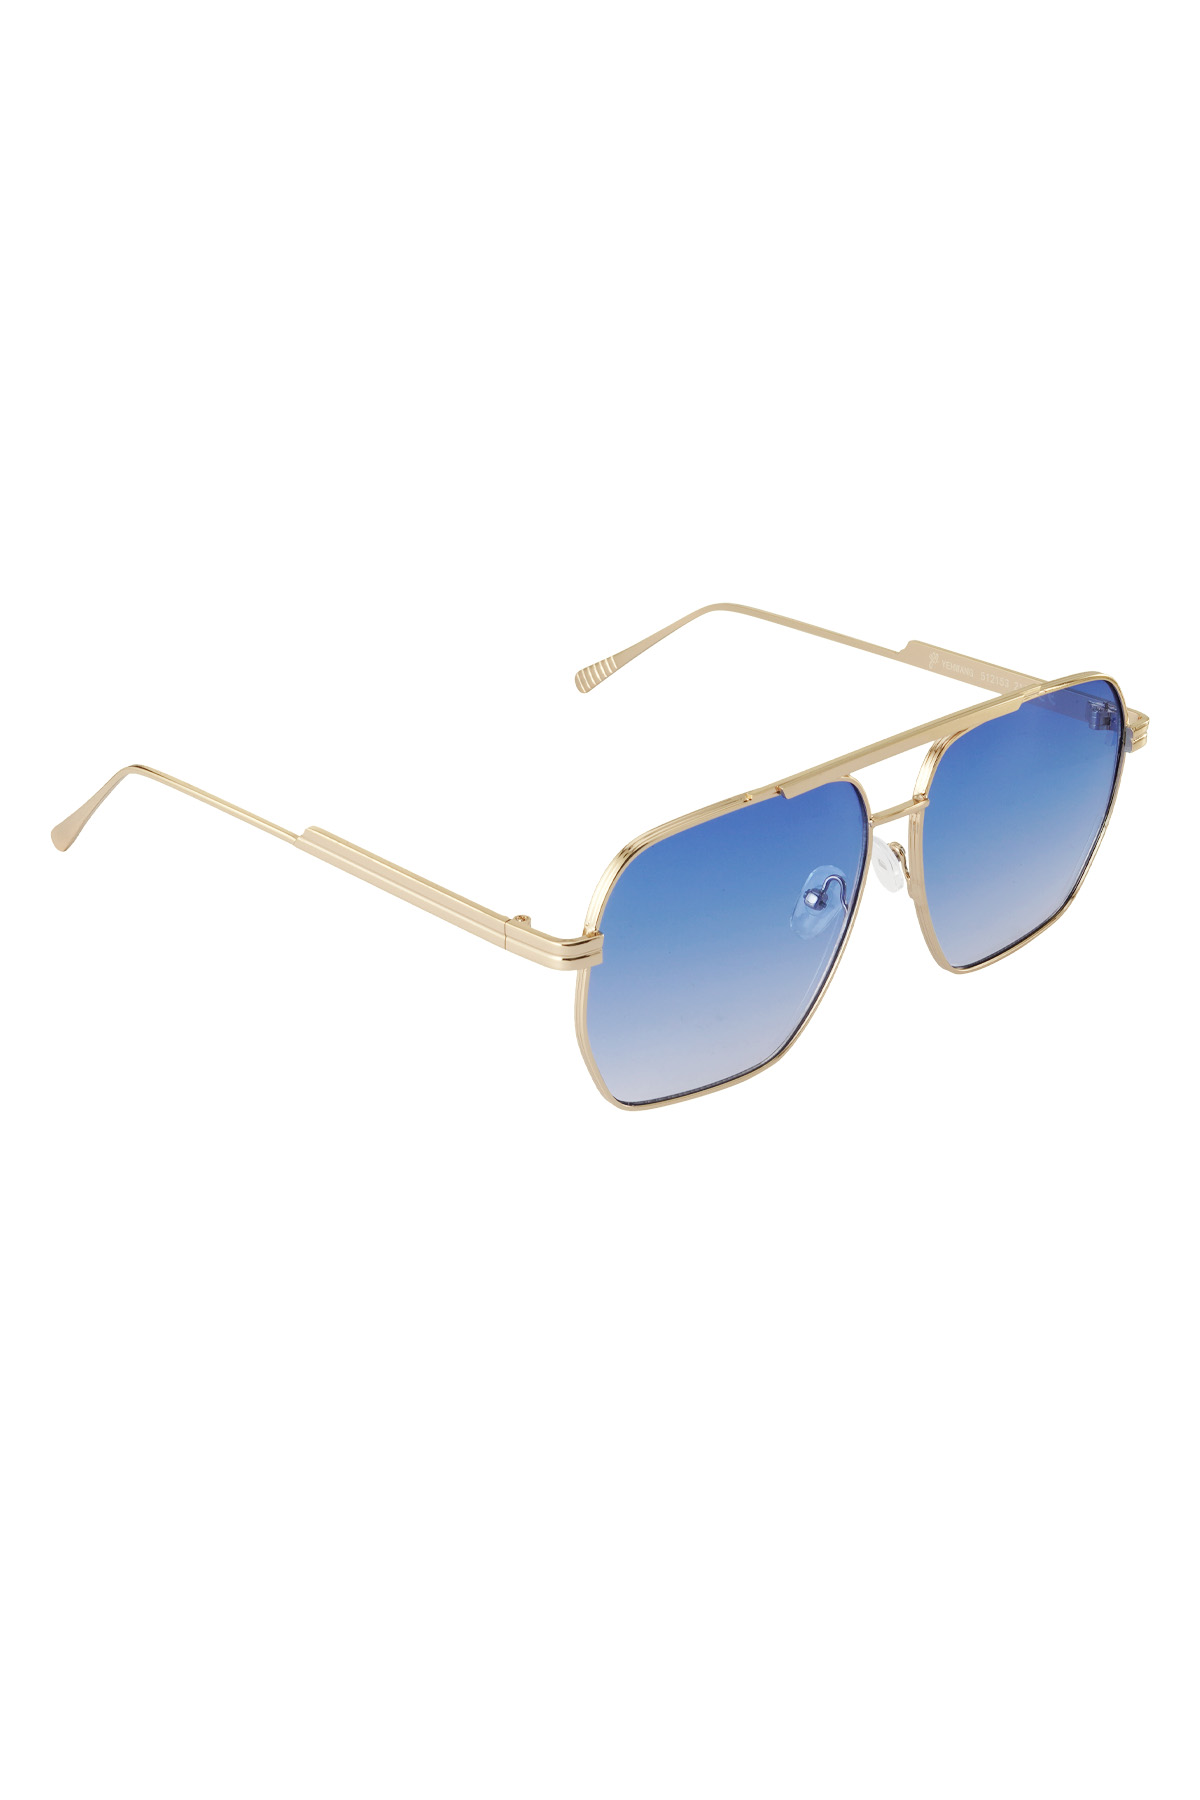 Sommersonnenbrille aus Metall – Blau und Gold